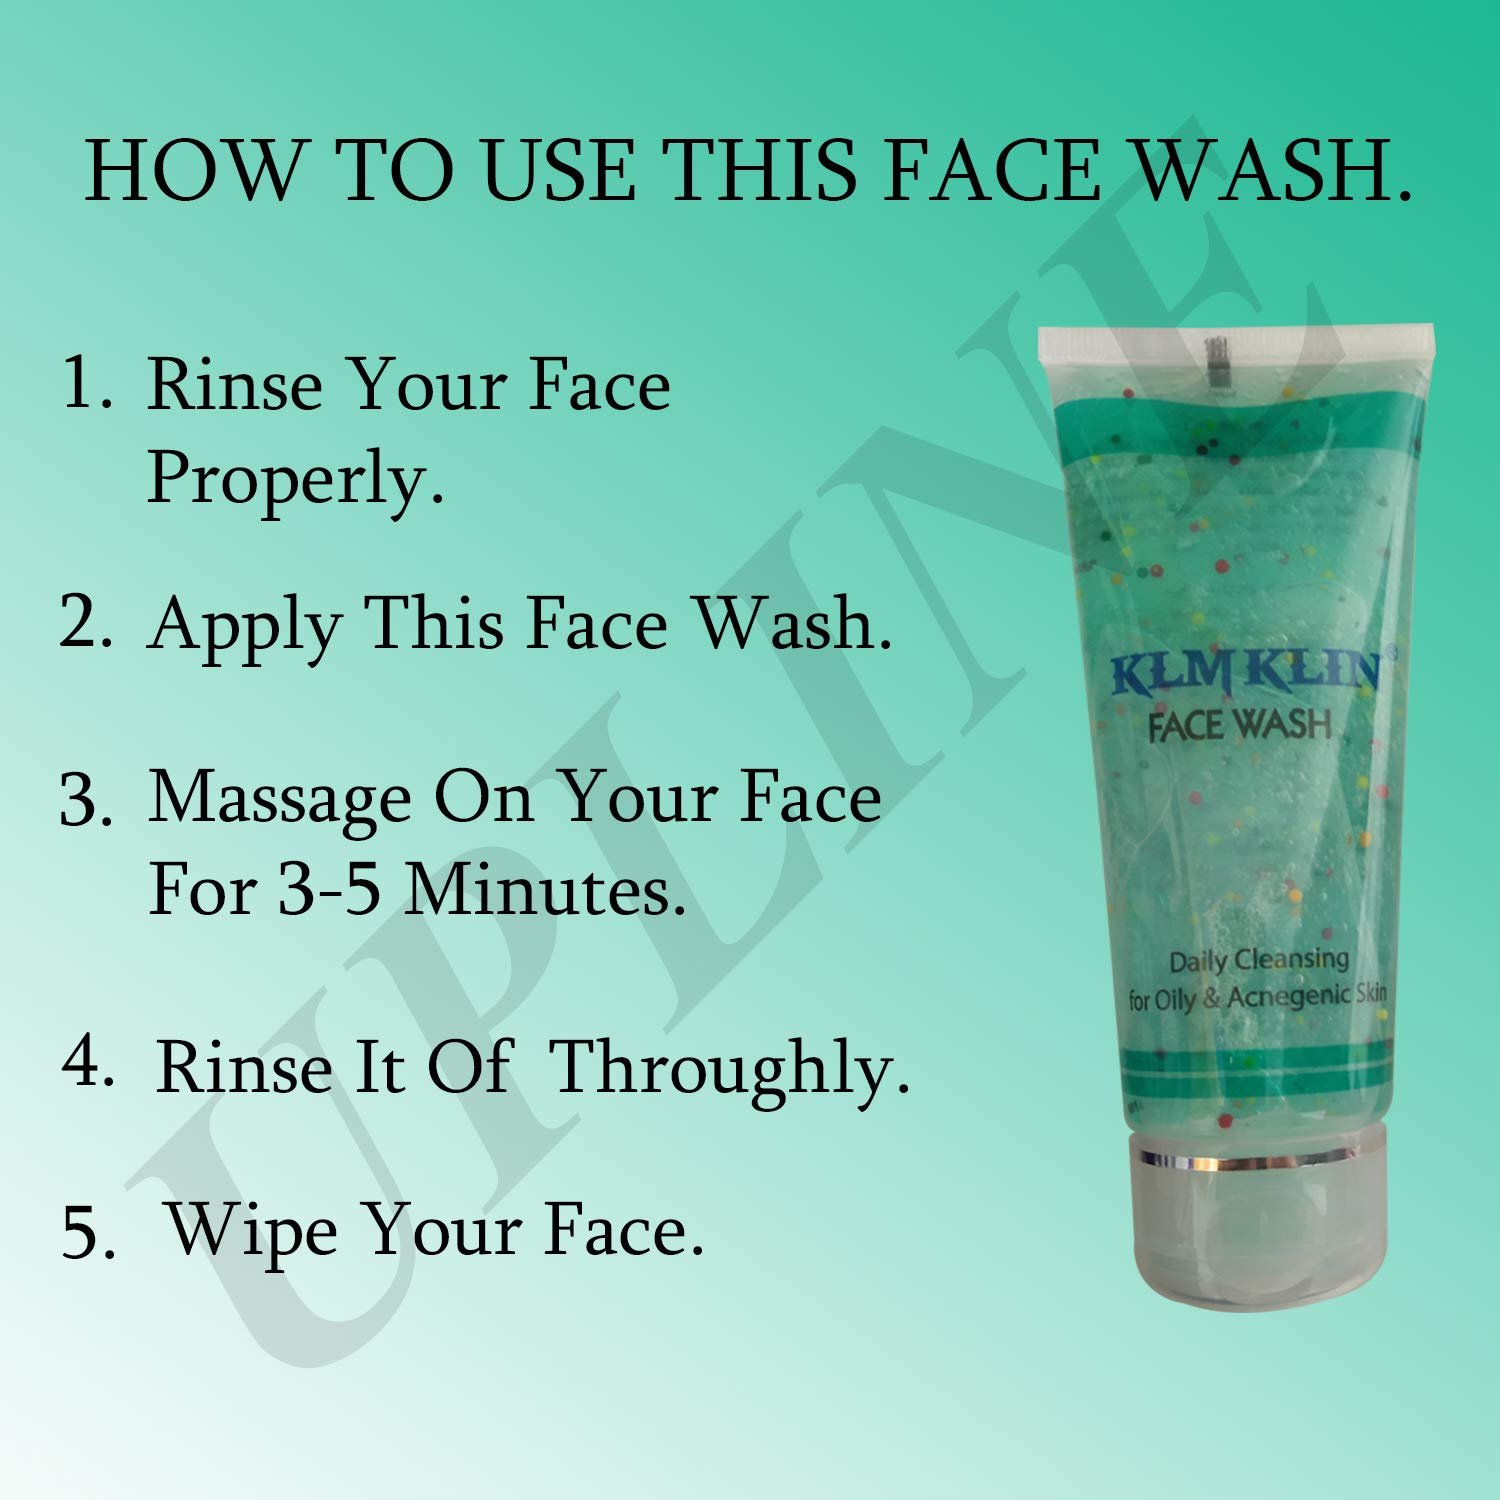 Klm Klin Face Wash Benefits